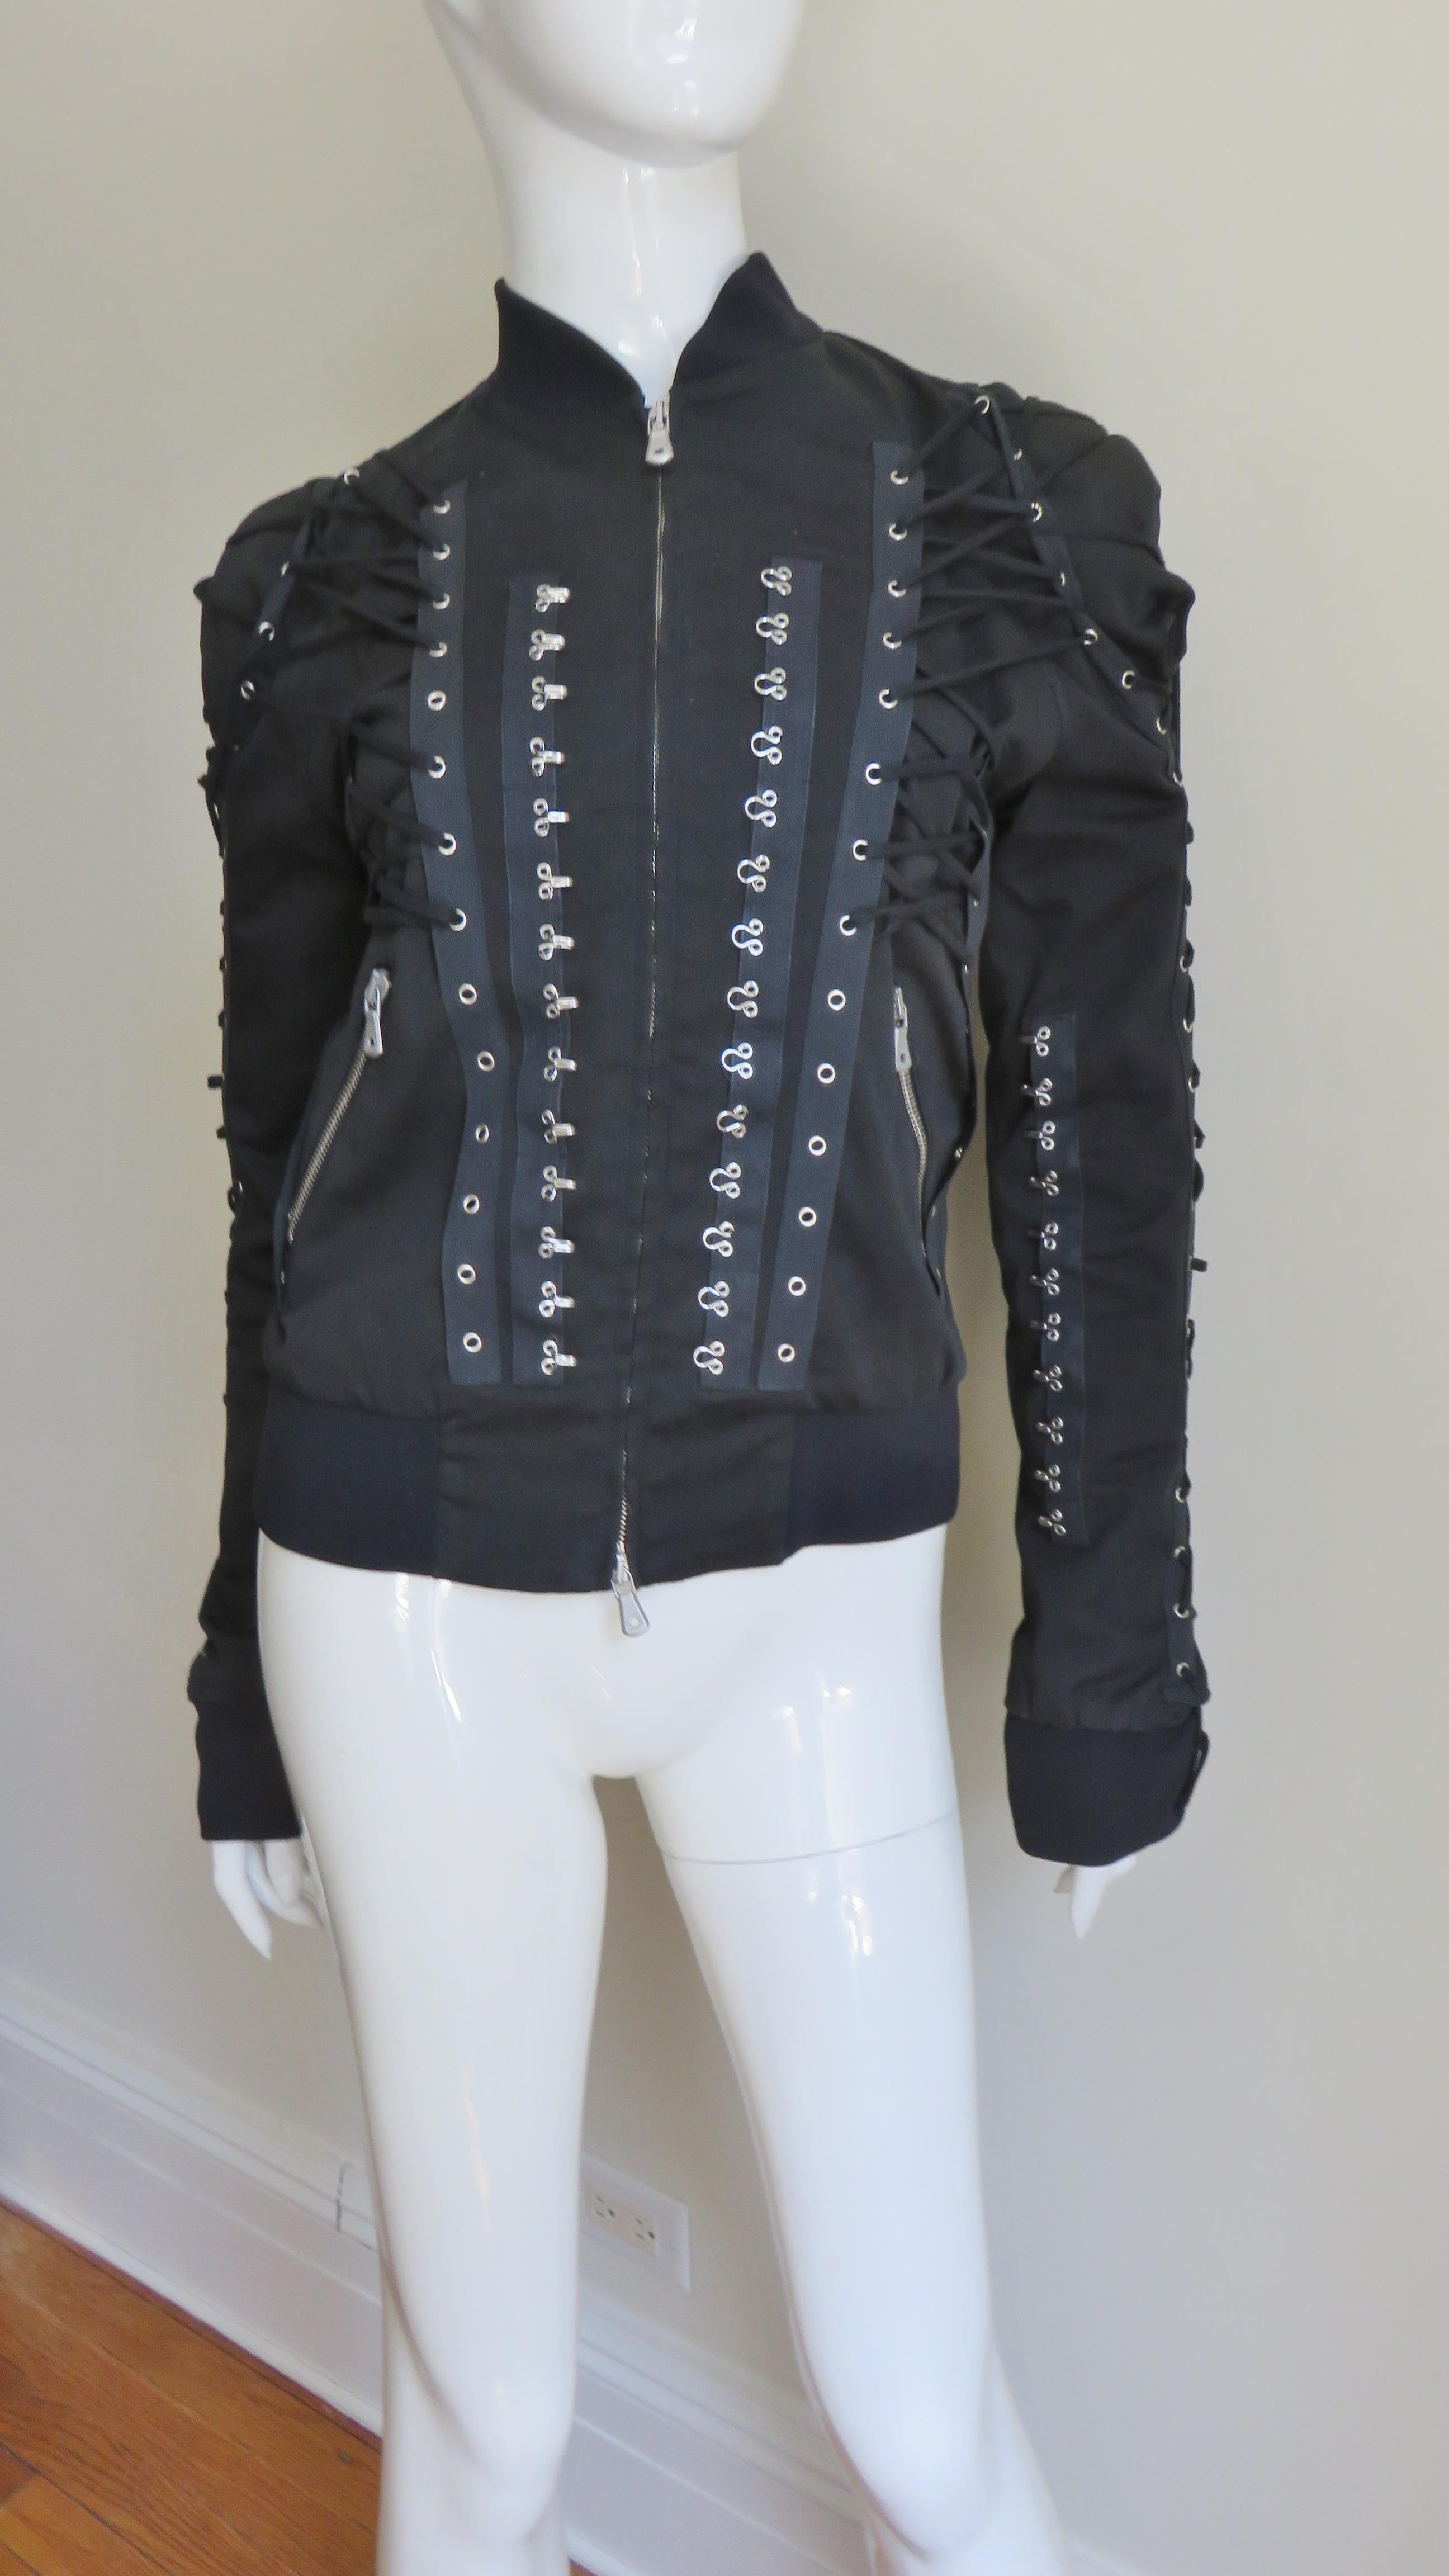 Eine unglaubliche Jacke aus schwarzer Baumwolle mit einem Hauch von Stretch von Dolce & Gabbana.  Sie hat einen silbernen Trennreißverschluss auf der Vorderseite mit Dolce & Gabbana-Zügen, das Gleiche gilt für die schrägen Vordertaschen.  Hals,